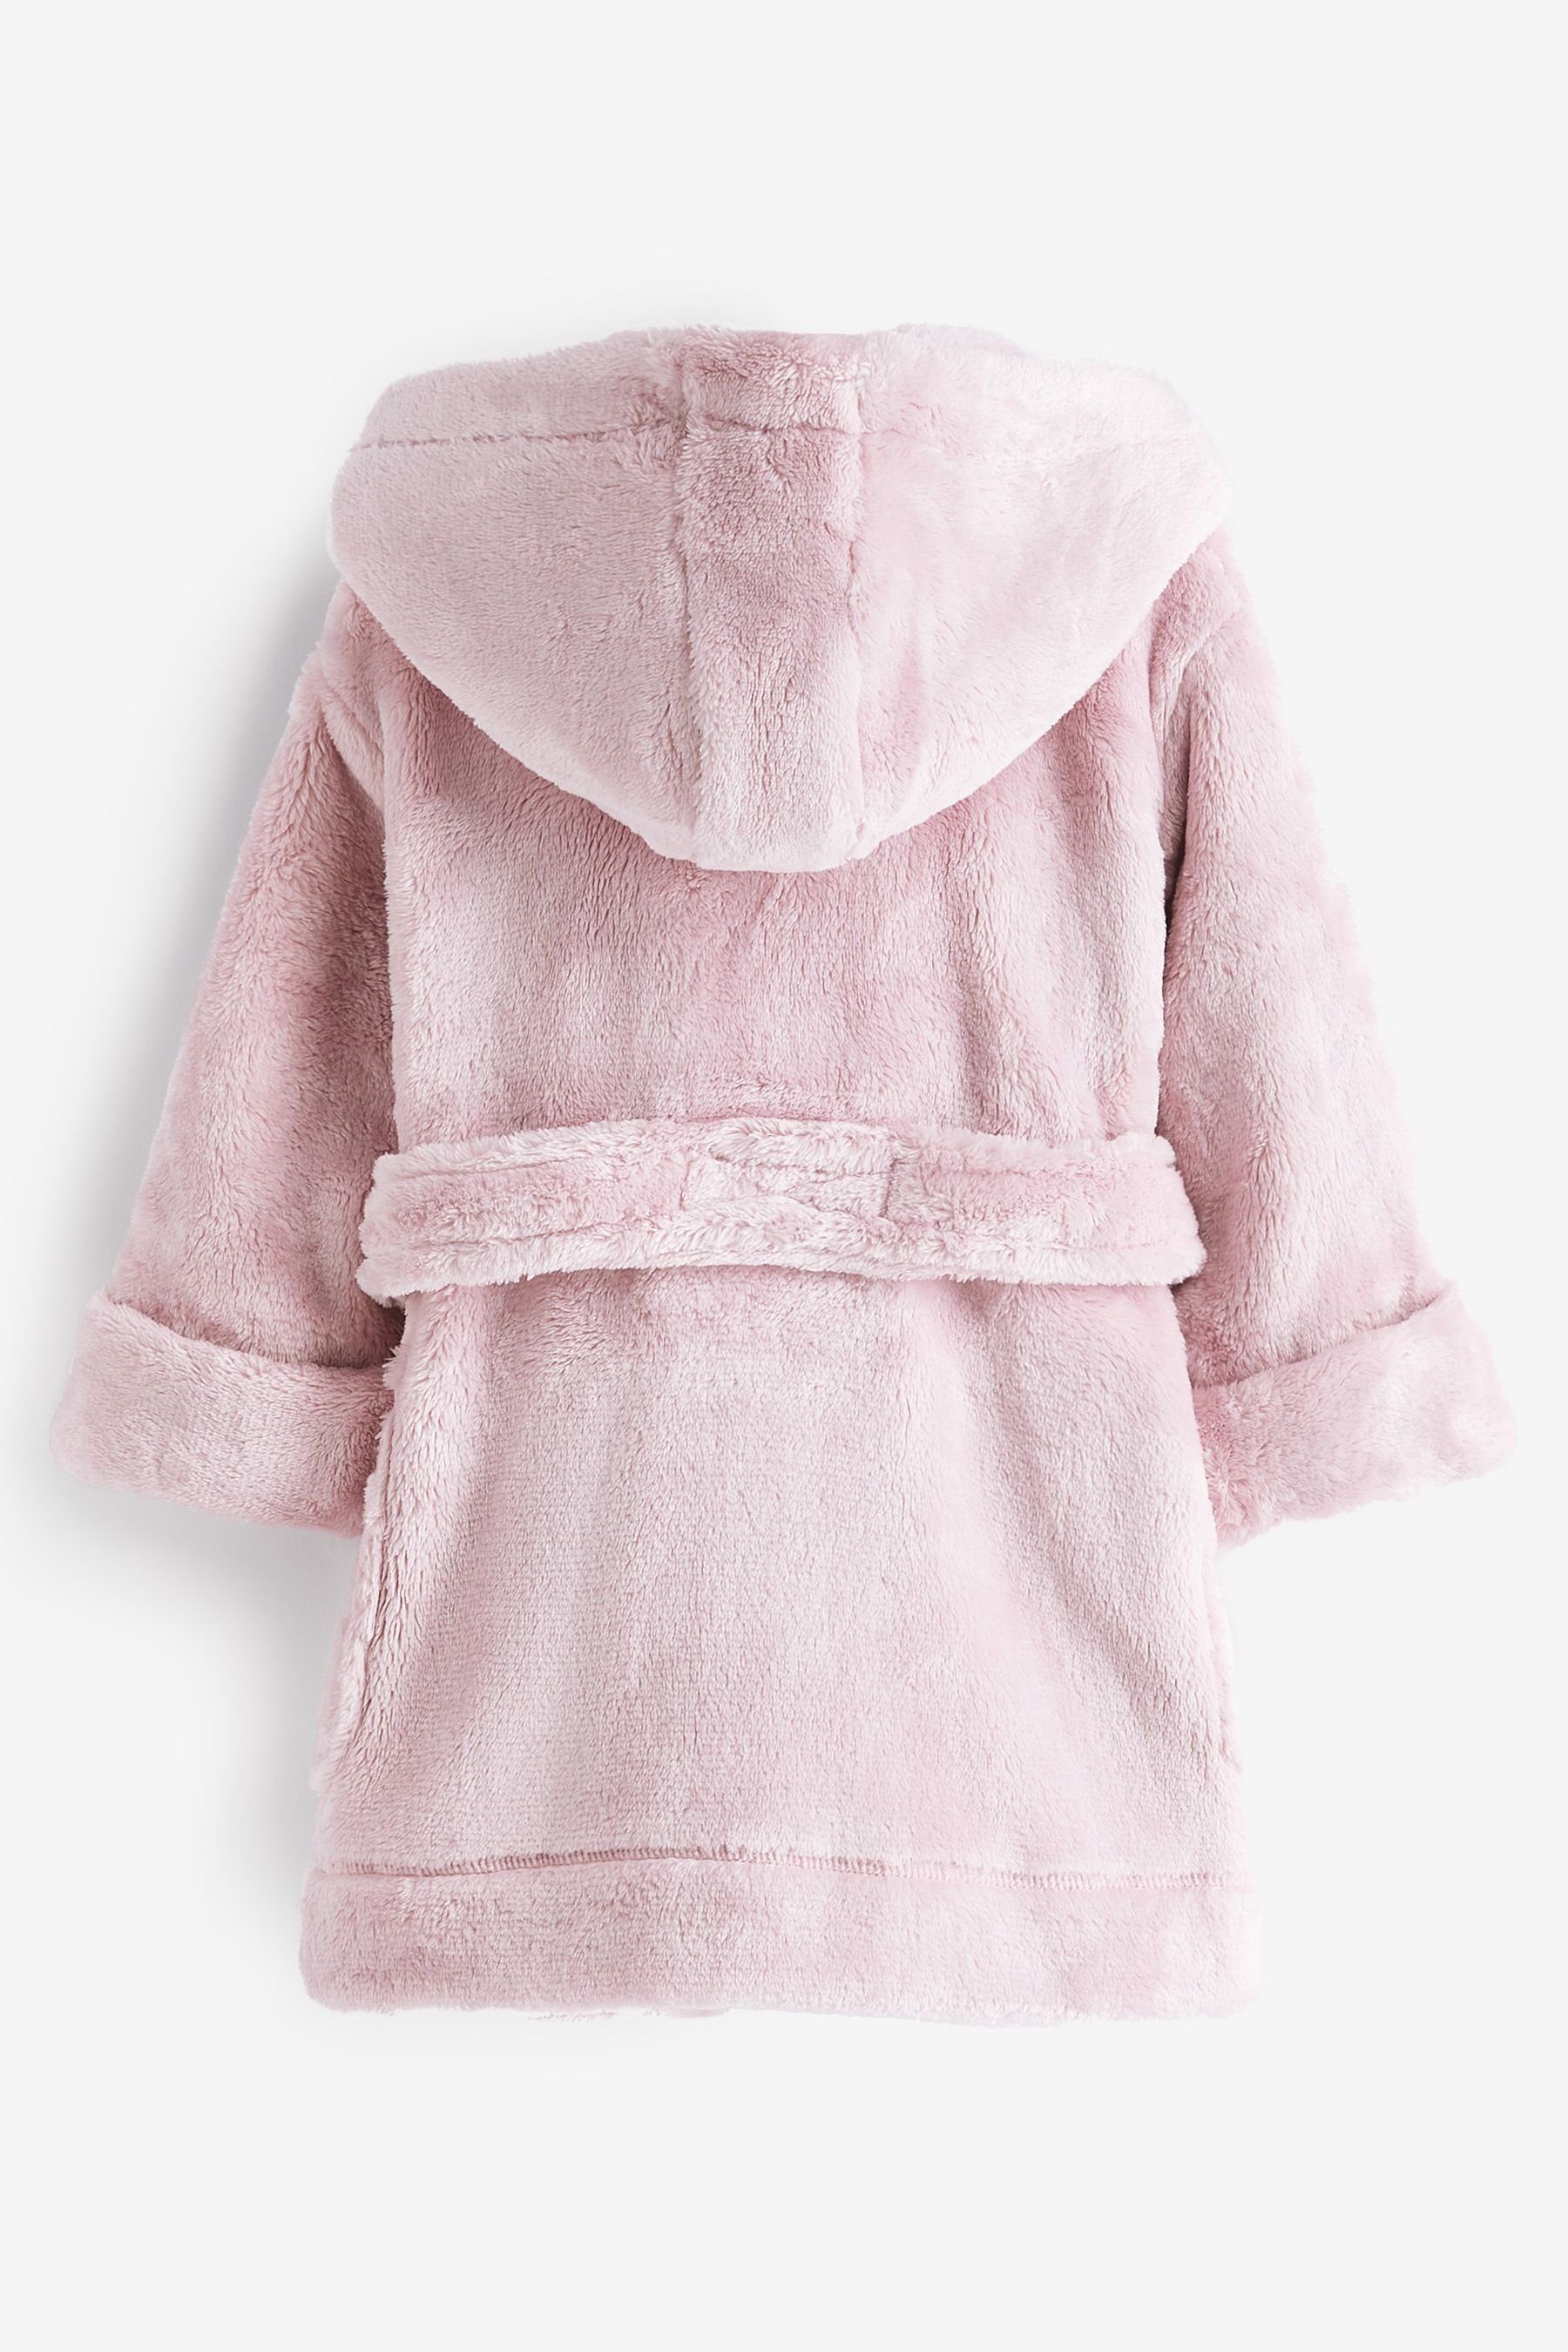 Weicher Pink Fleece-Morgenmantel, Kinderbademantel Polyester Next